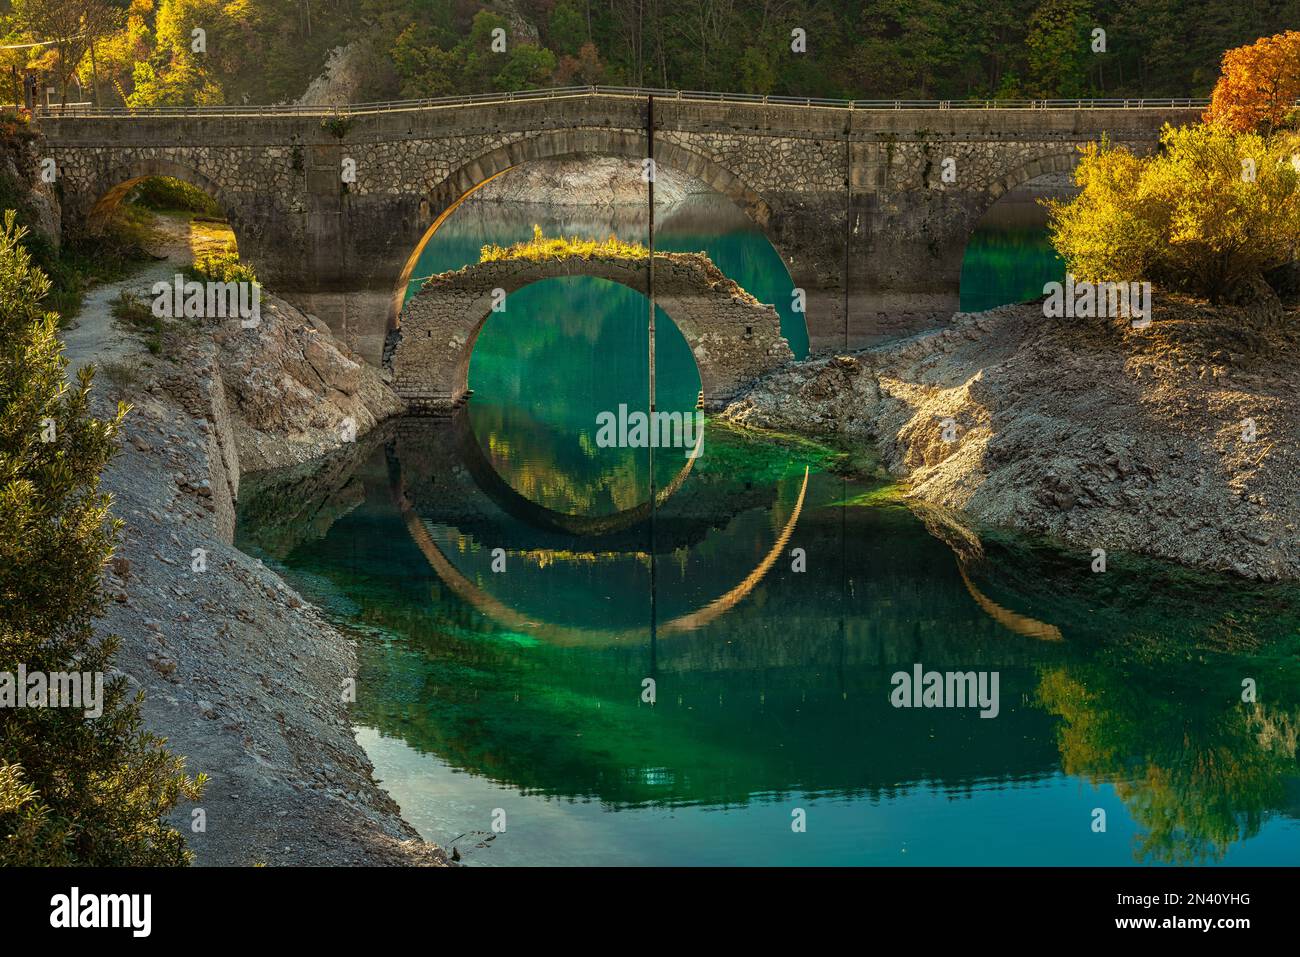 Die Herbstfarben der Bäume und zwei Brücken spiegeln sich im kristallklaren und türkisfarbenen Wasser der lak wider. Abruzzen, italien, Europa Stockfoto